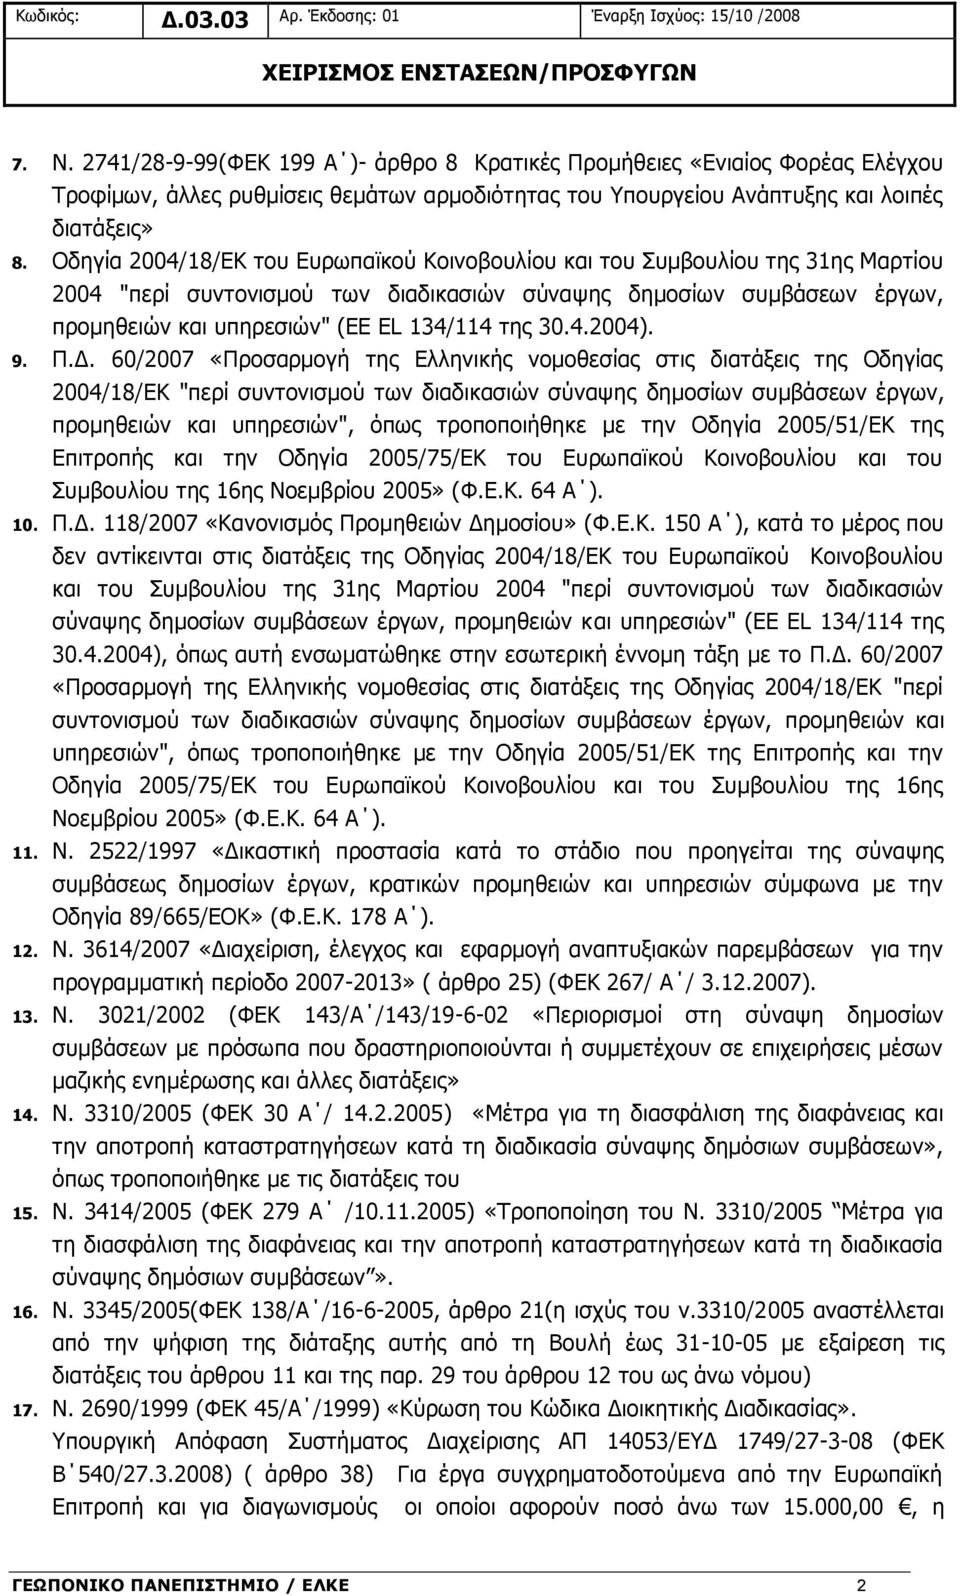 Οδηγία 2004/18/ΕΚ του Ευρωπαϊκού Κοινοβουλίου και του Συμβουλίου της 31ης Μαρτίου 2004 "περί συντονισμού των διαδικασιών σύναψης δημοσίων συμβάσεων έργων, προμηθειών και υπηρεσιών" (ΕΕ EL 134/114 της